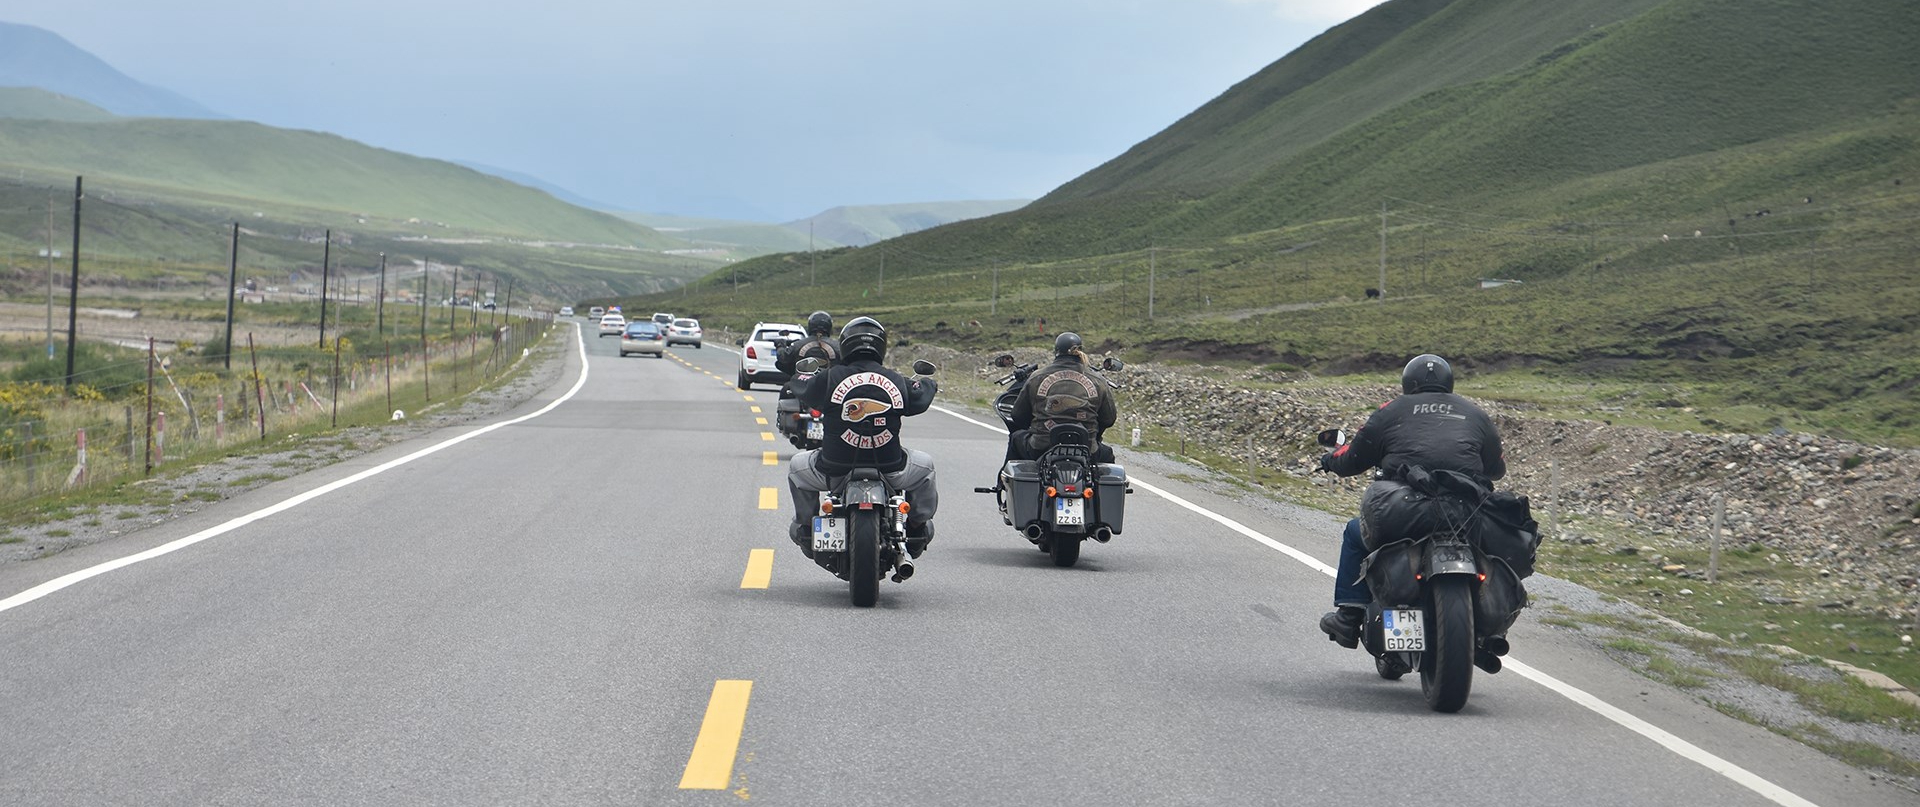 Voyage à Moto Louée du Sichuan via Yunnan au Tibet